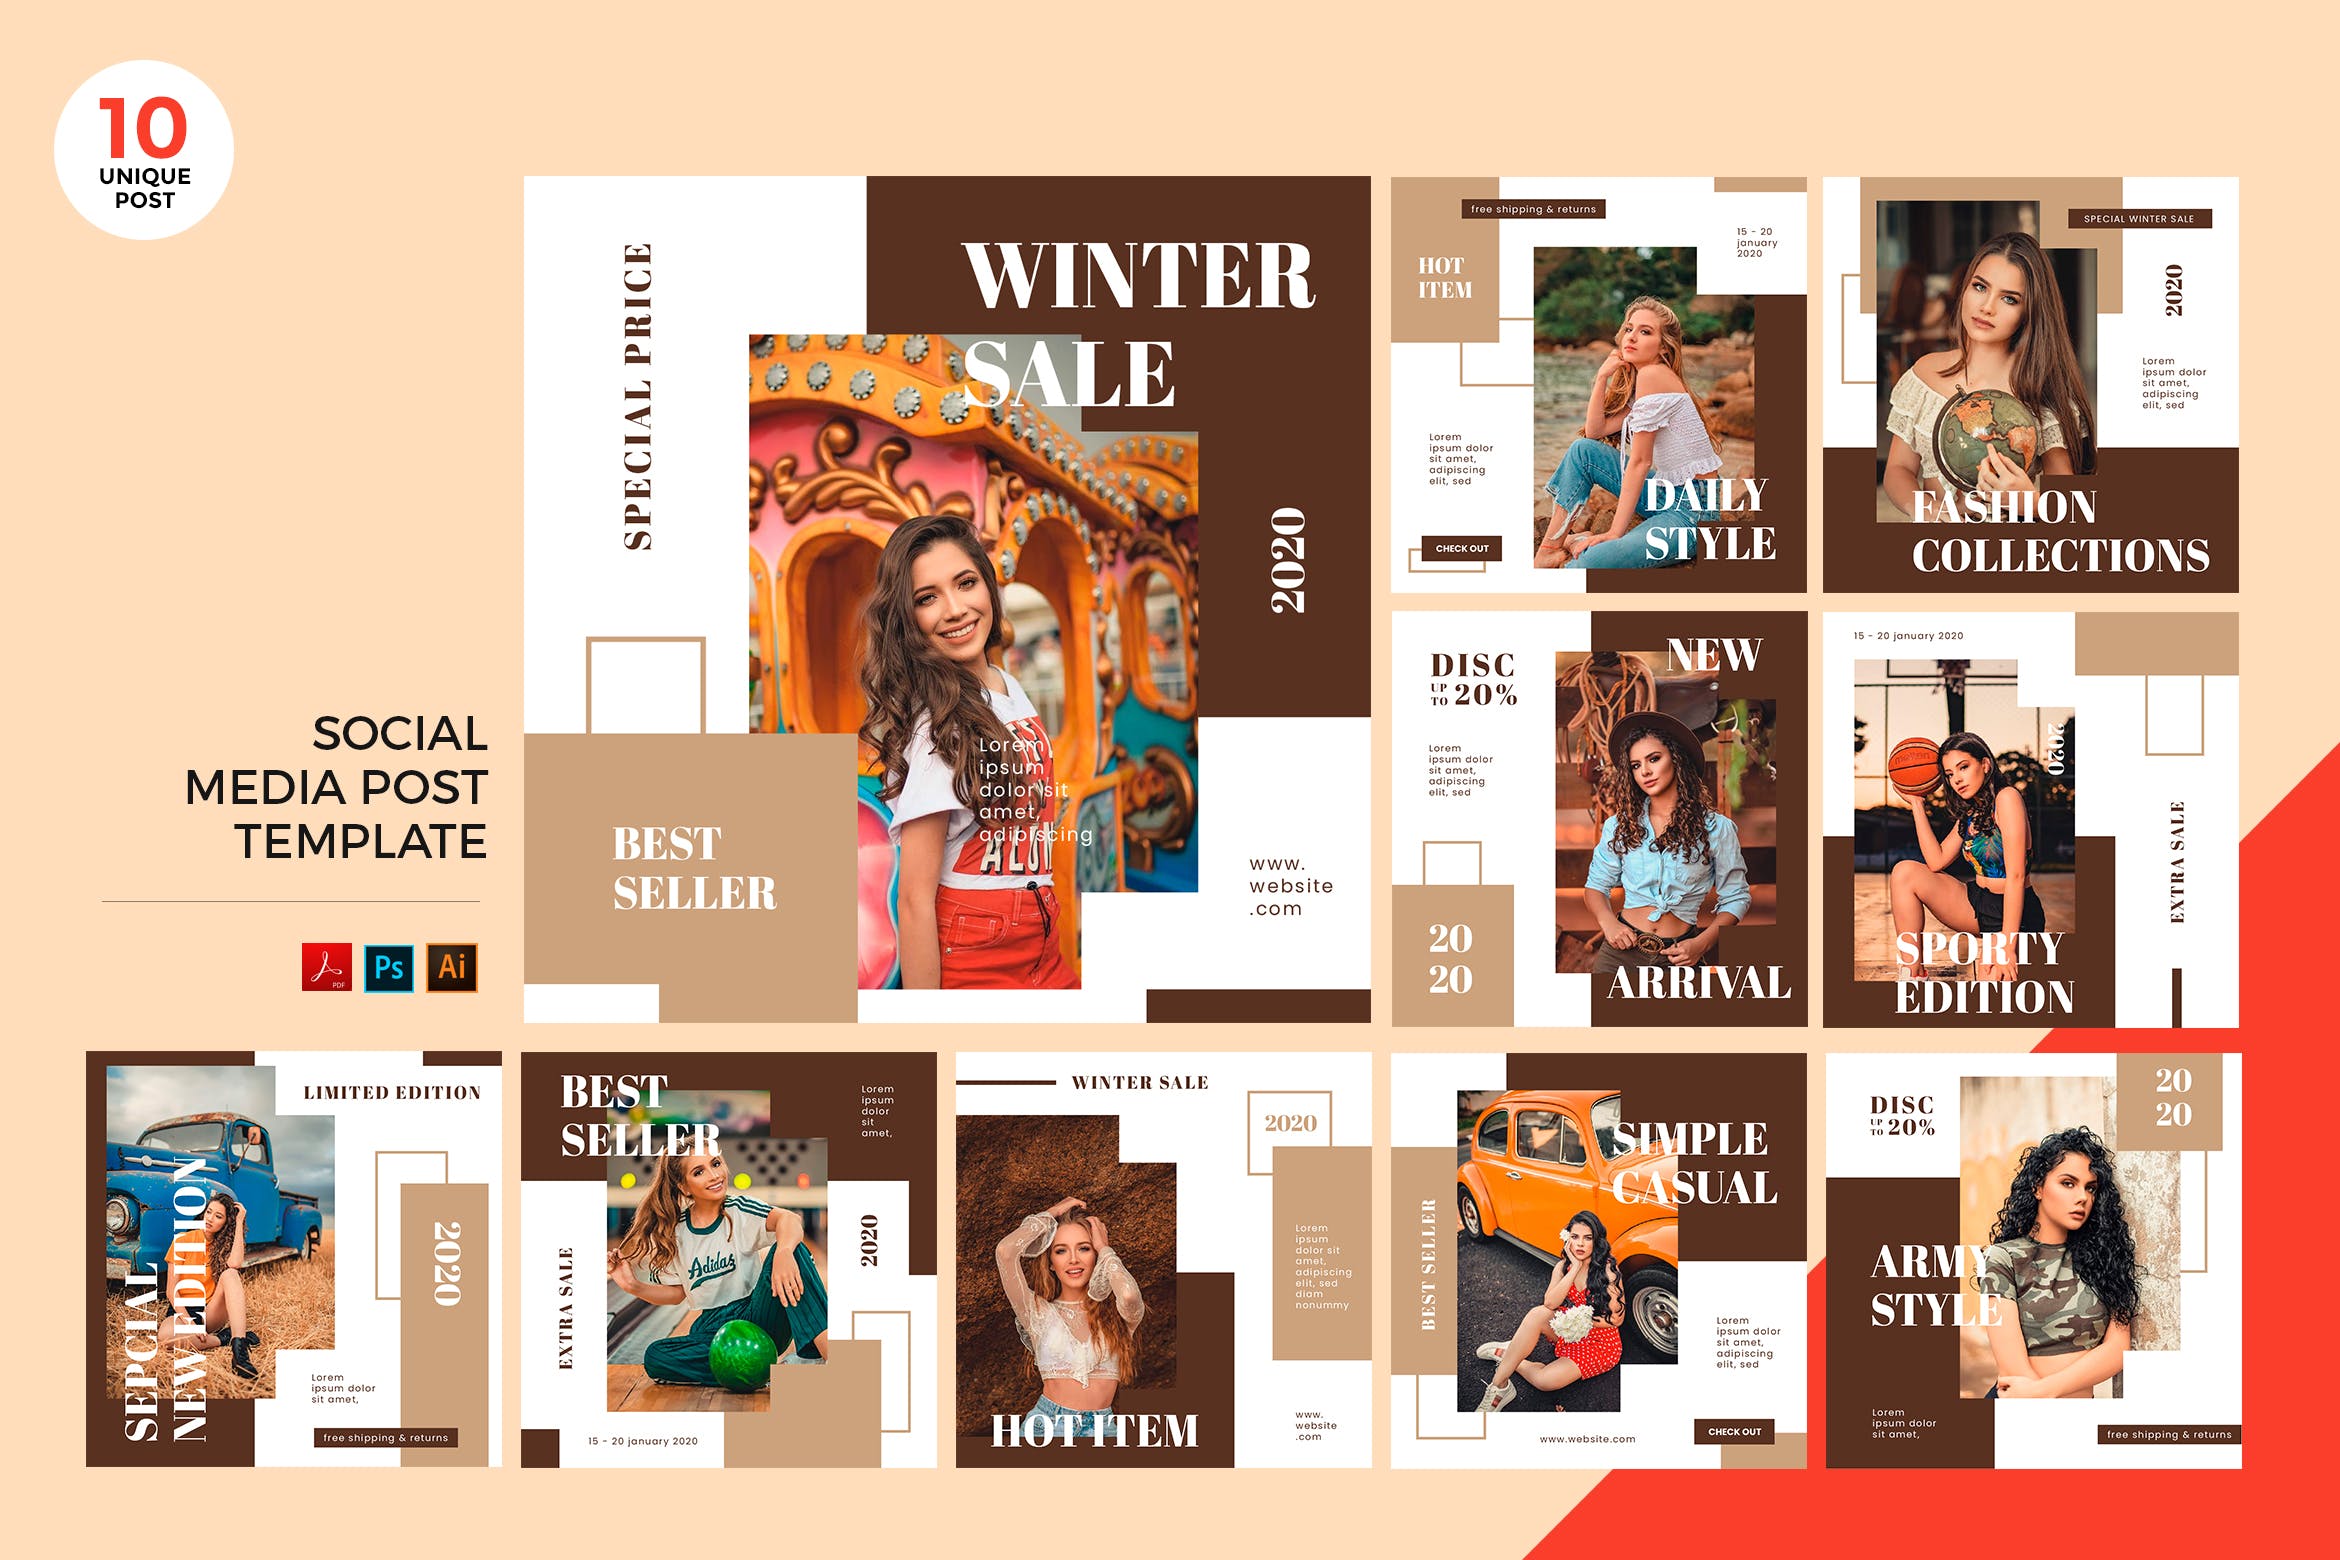 时尚品牌冬季销售主题社交媒体设计素材包 Winter Sale Fashion Social Media Kit PSD & AI插图